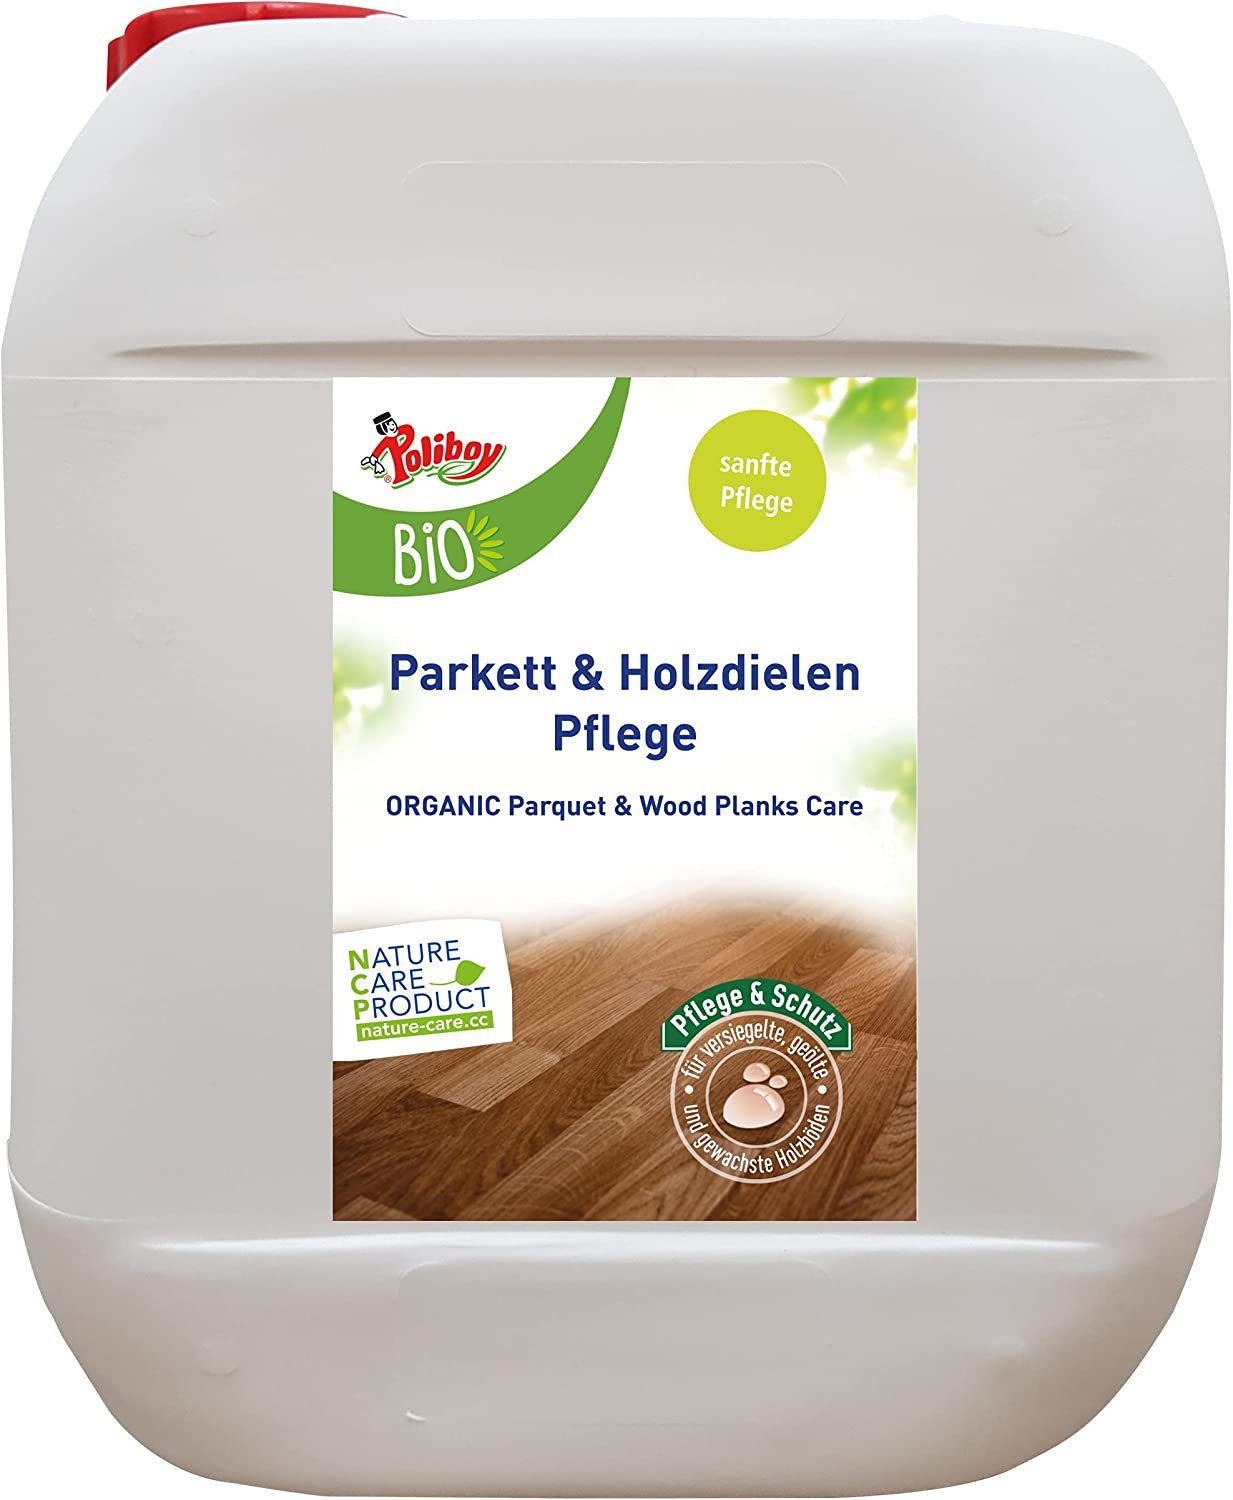 poliboy Poliboy - Parkett Parkettreiniger Pflegekonzentrat Liter 5